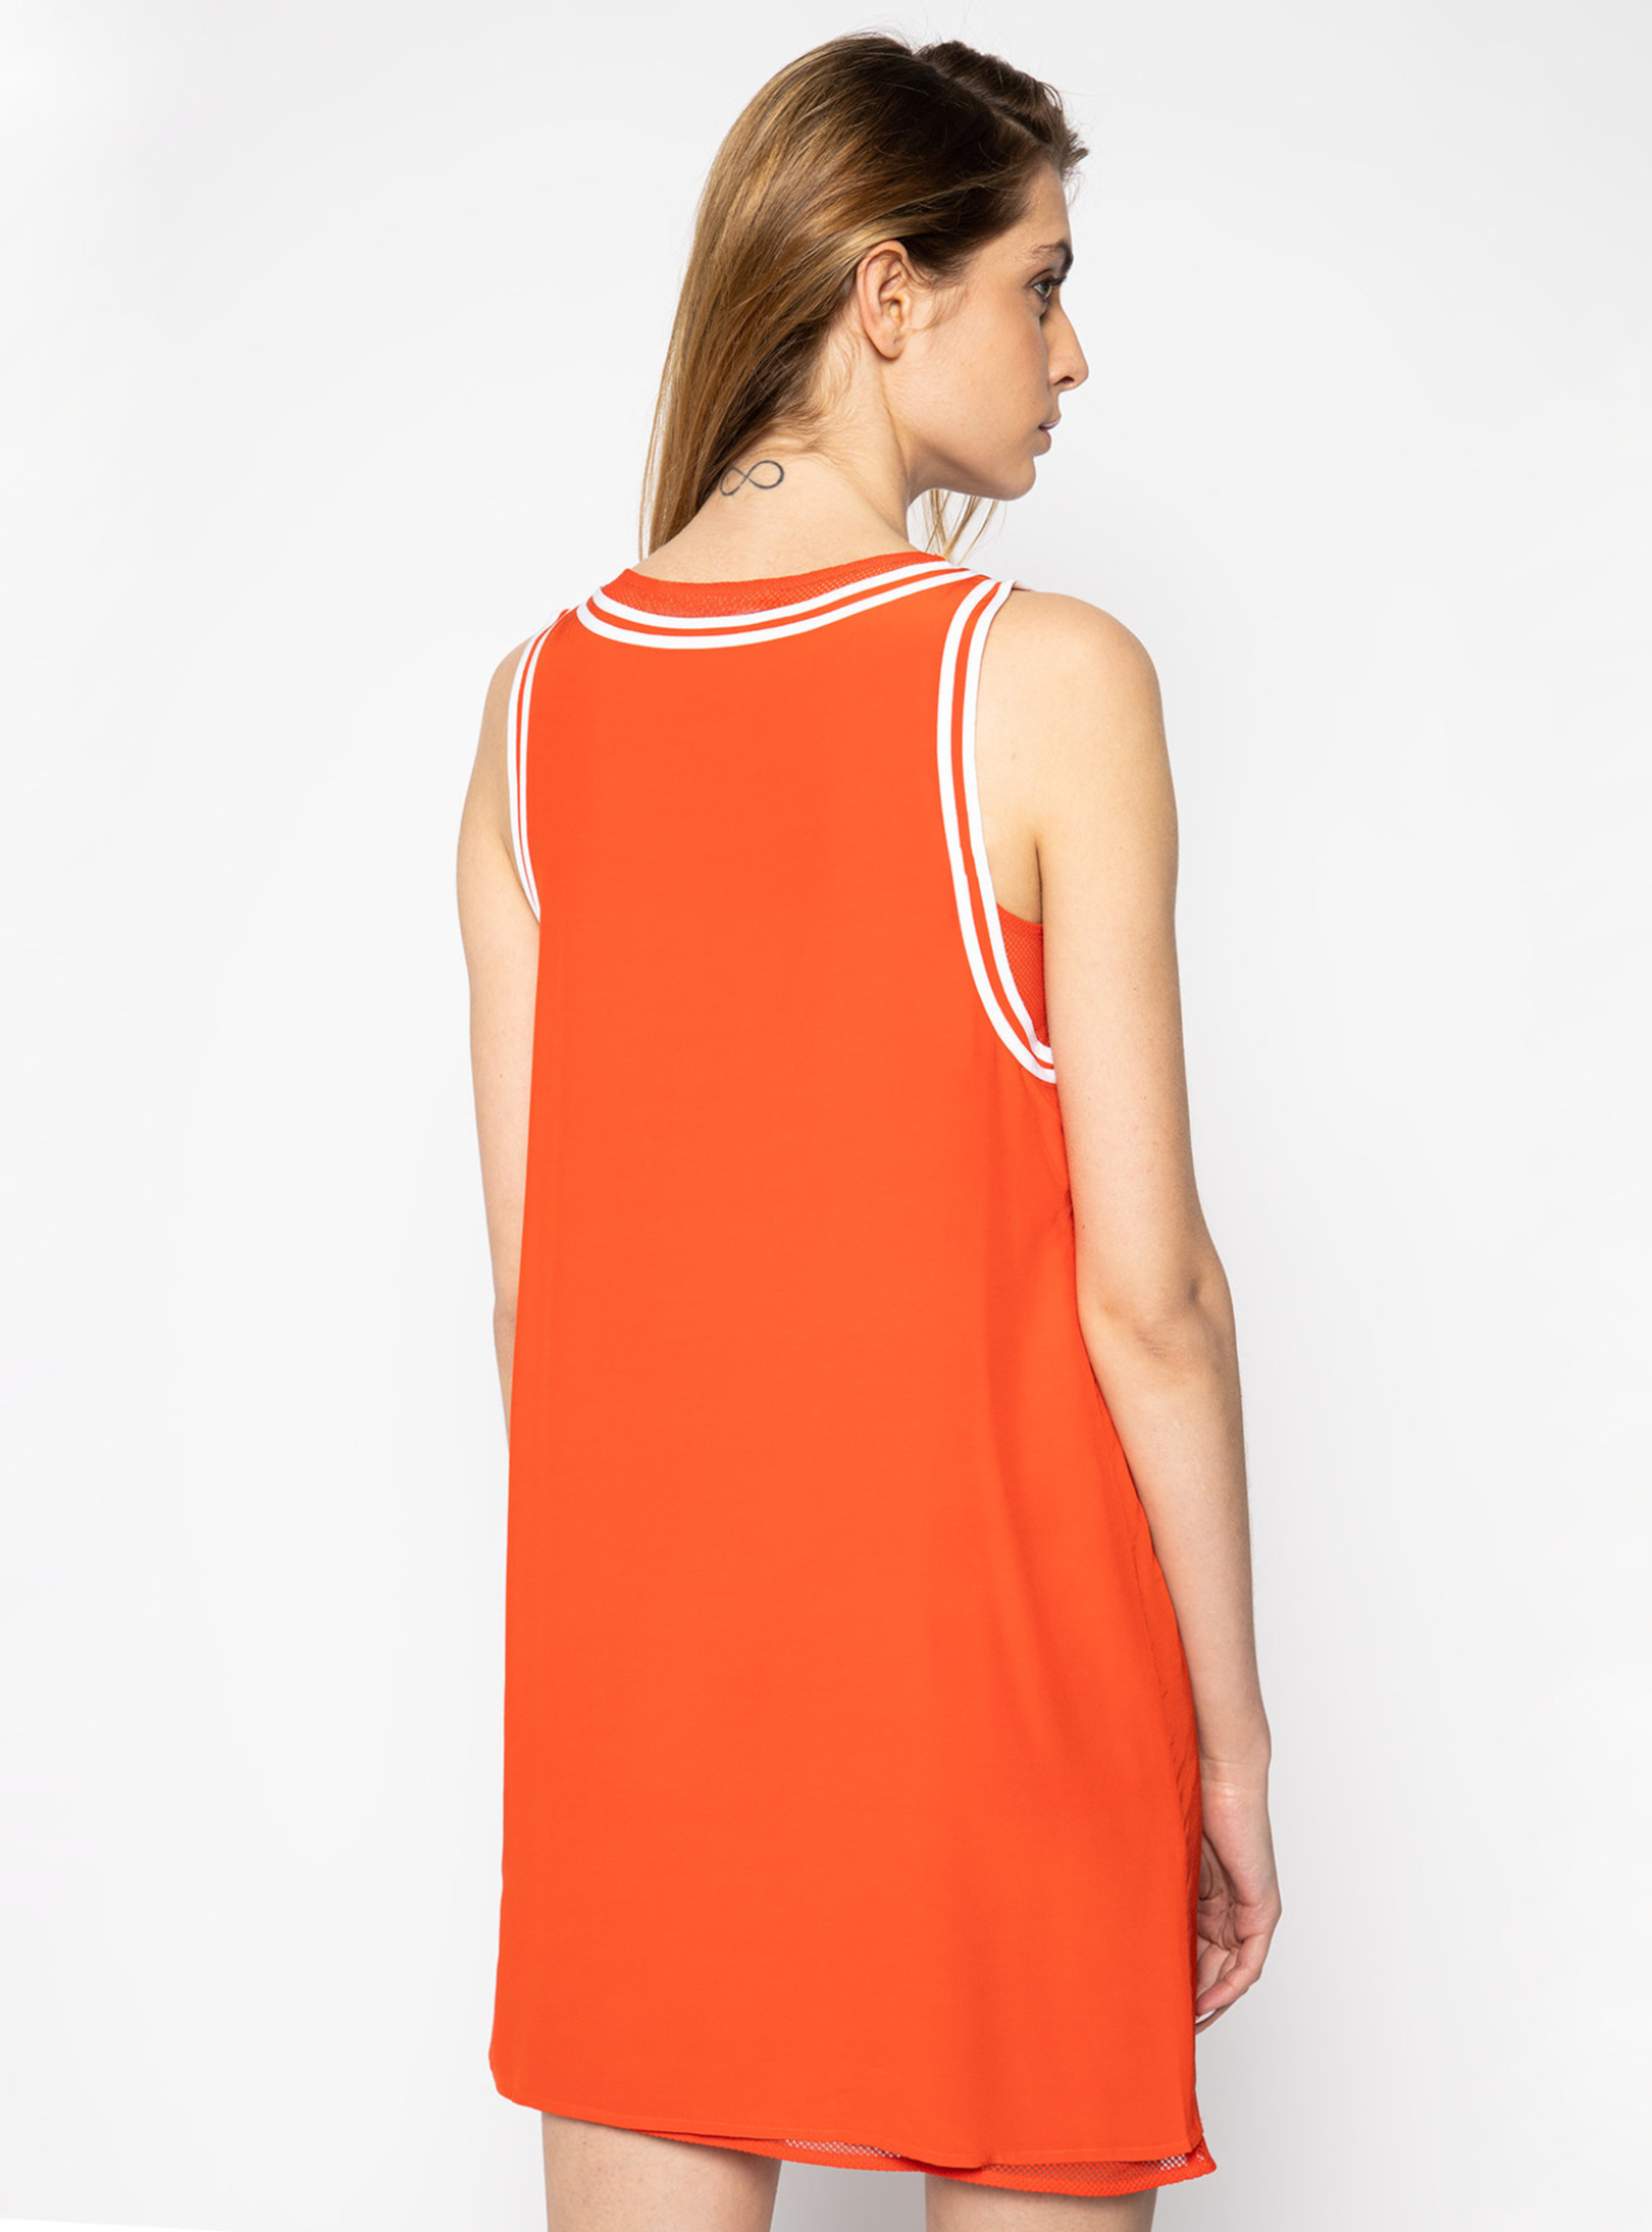 Calvin Klein dámské červené šaty - XS (XA7)